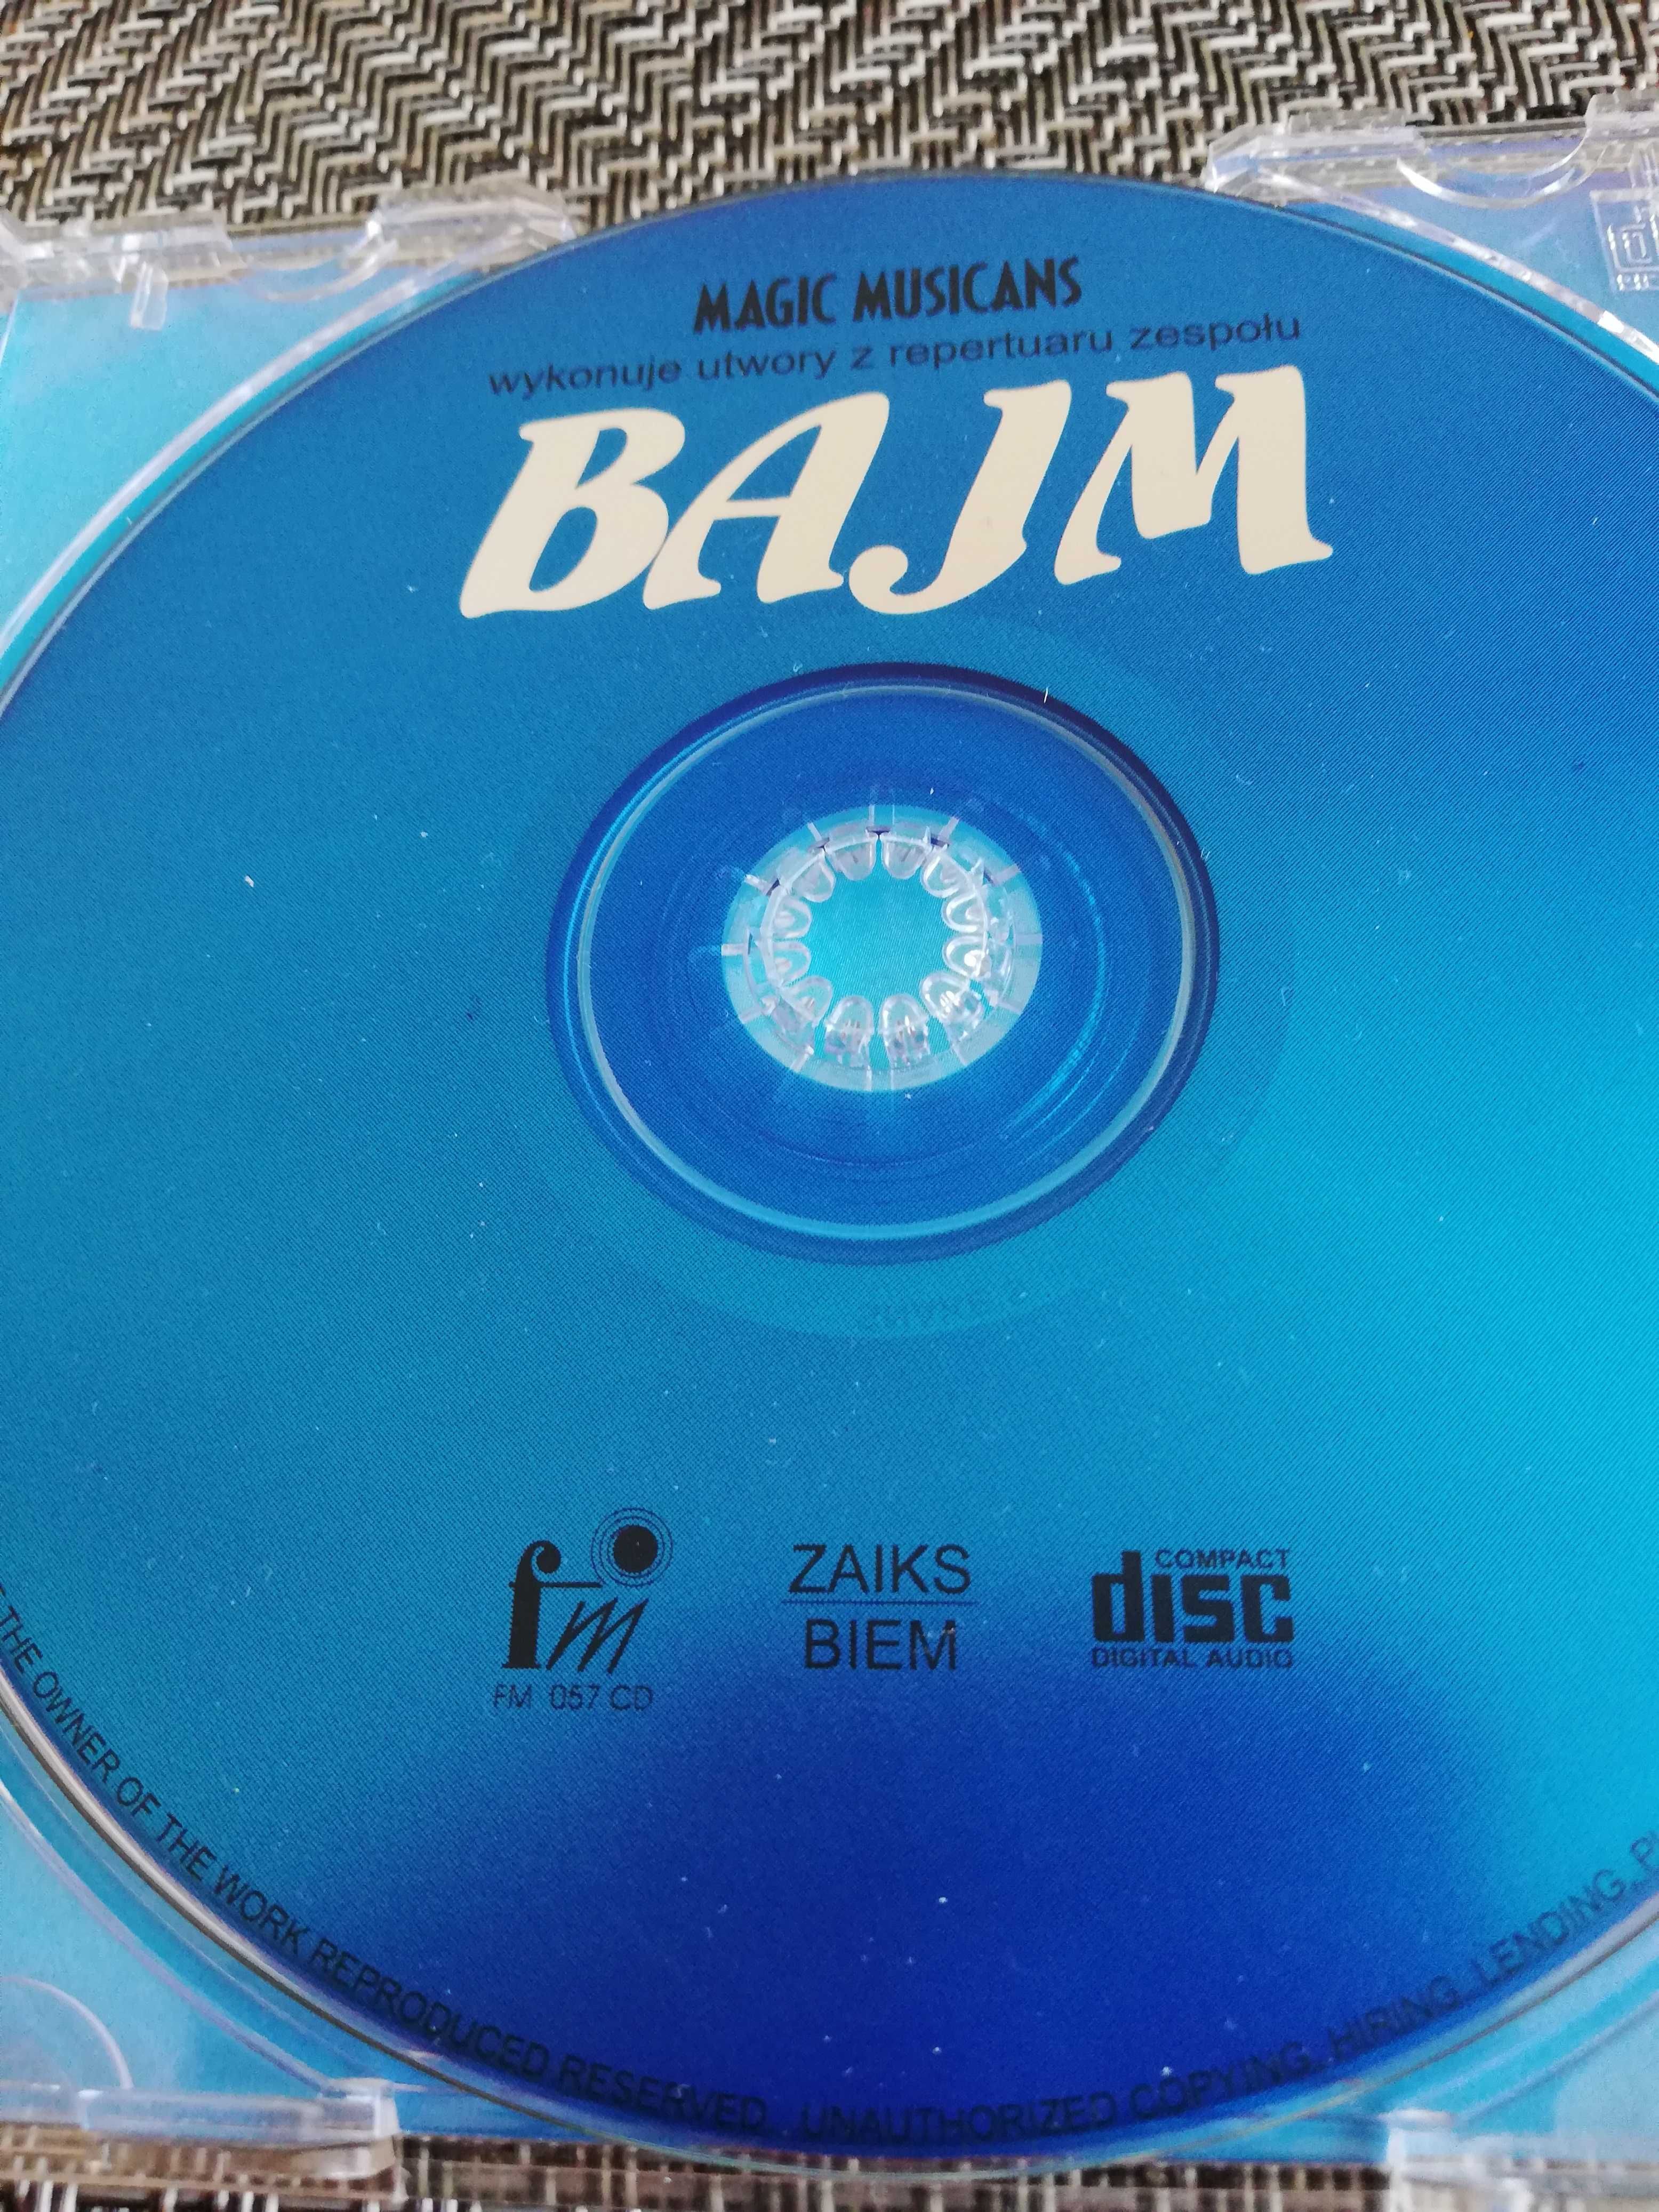 The Magic Musicans wykonuje utwory z repertuaru BAJM - audio CD